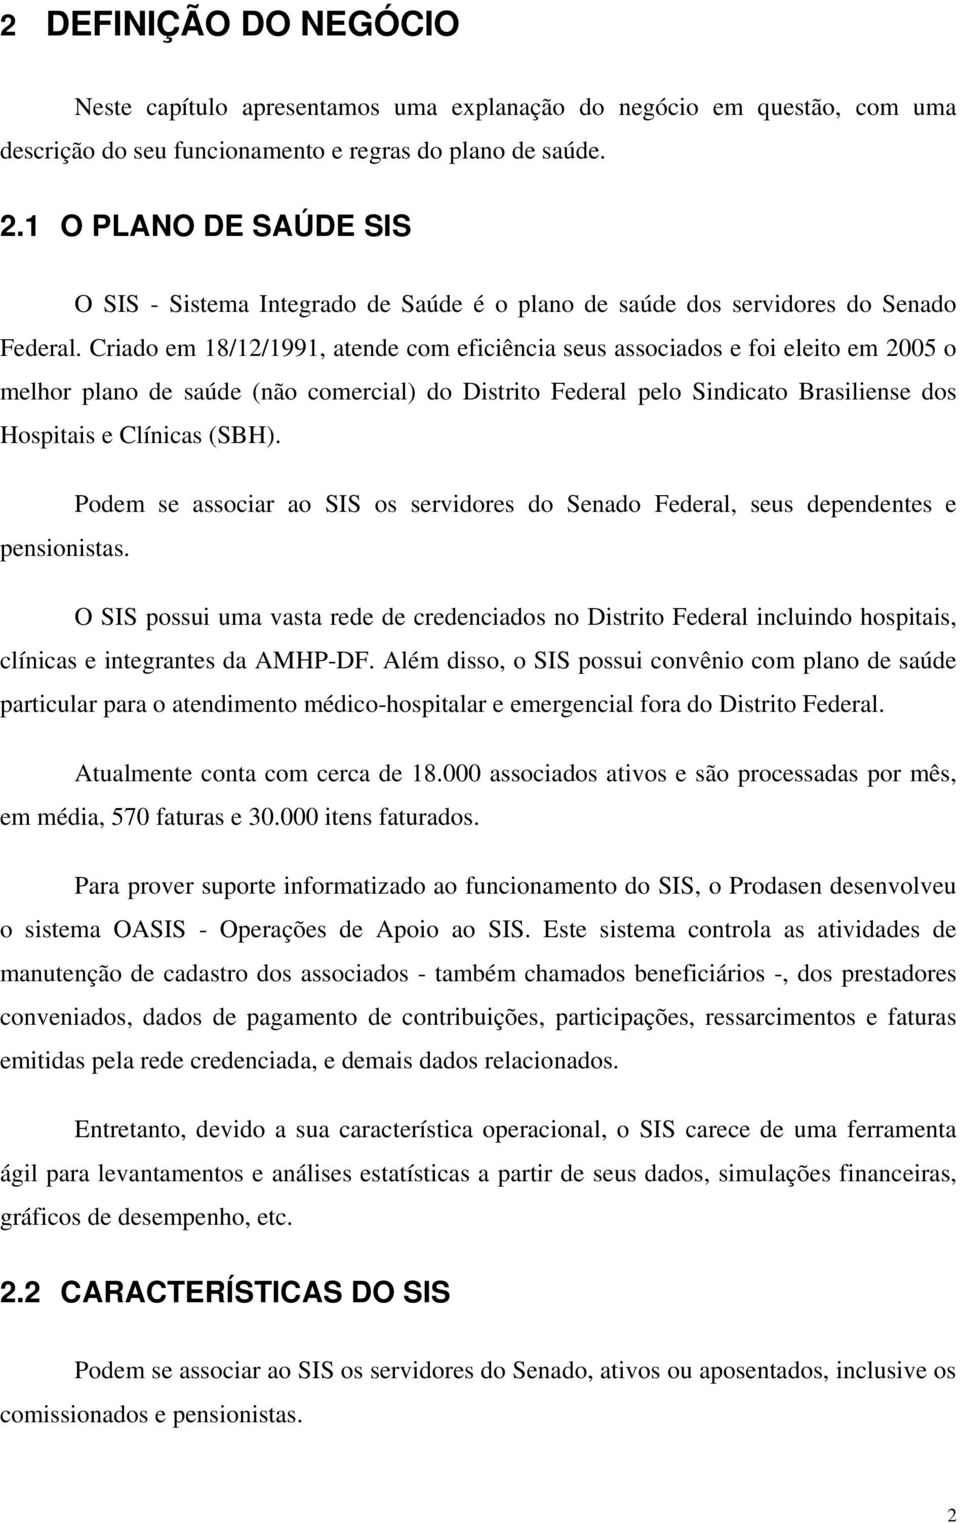 Criado em 18/12/1991, atende com eficiência seus associados e foi eleito em 2005 o melhor plano de saúde (não comercial) do Distrito Federal pelo Sindicato Brasiliense dos Hospitais e Clínicas (SBH).